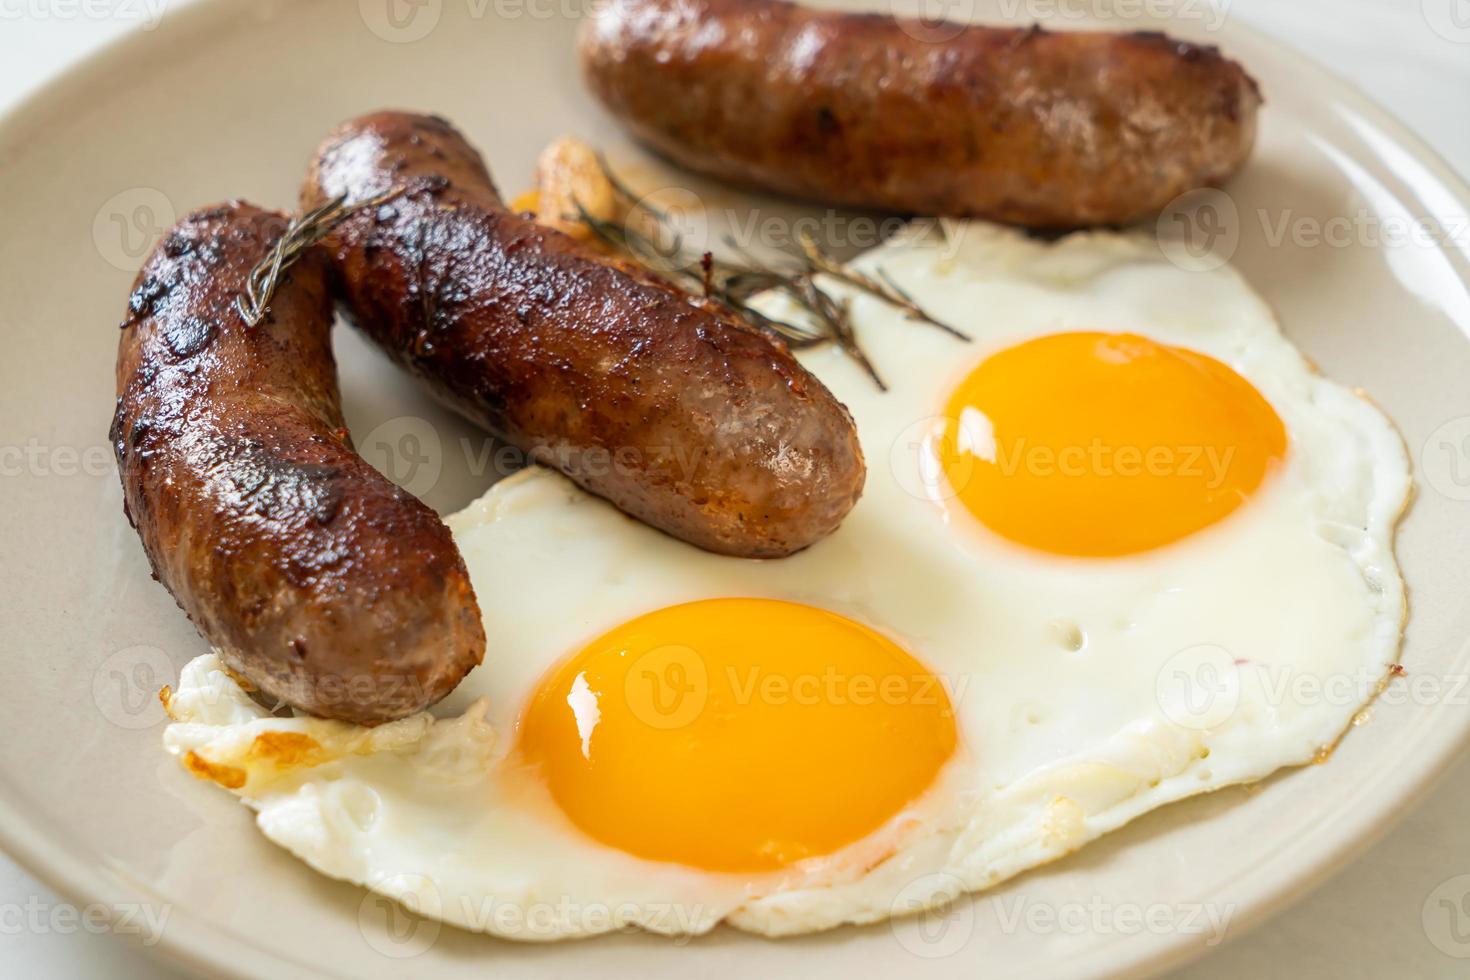 doppio uovo fritto fatto in casa con salsiccia di maiale fritta - per colazione foto